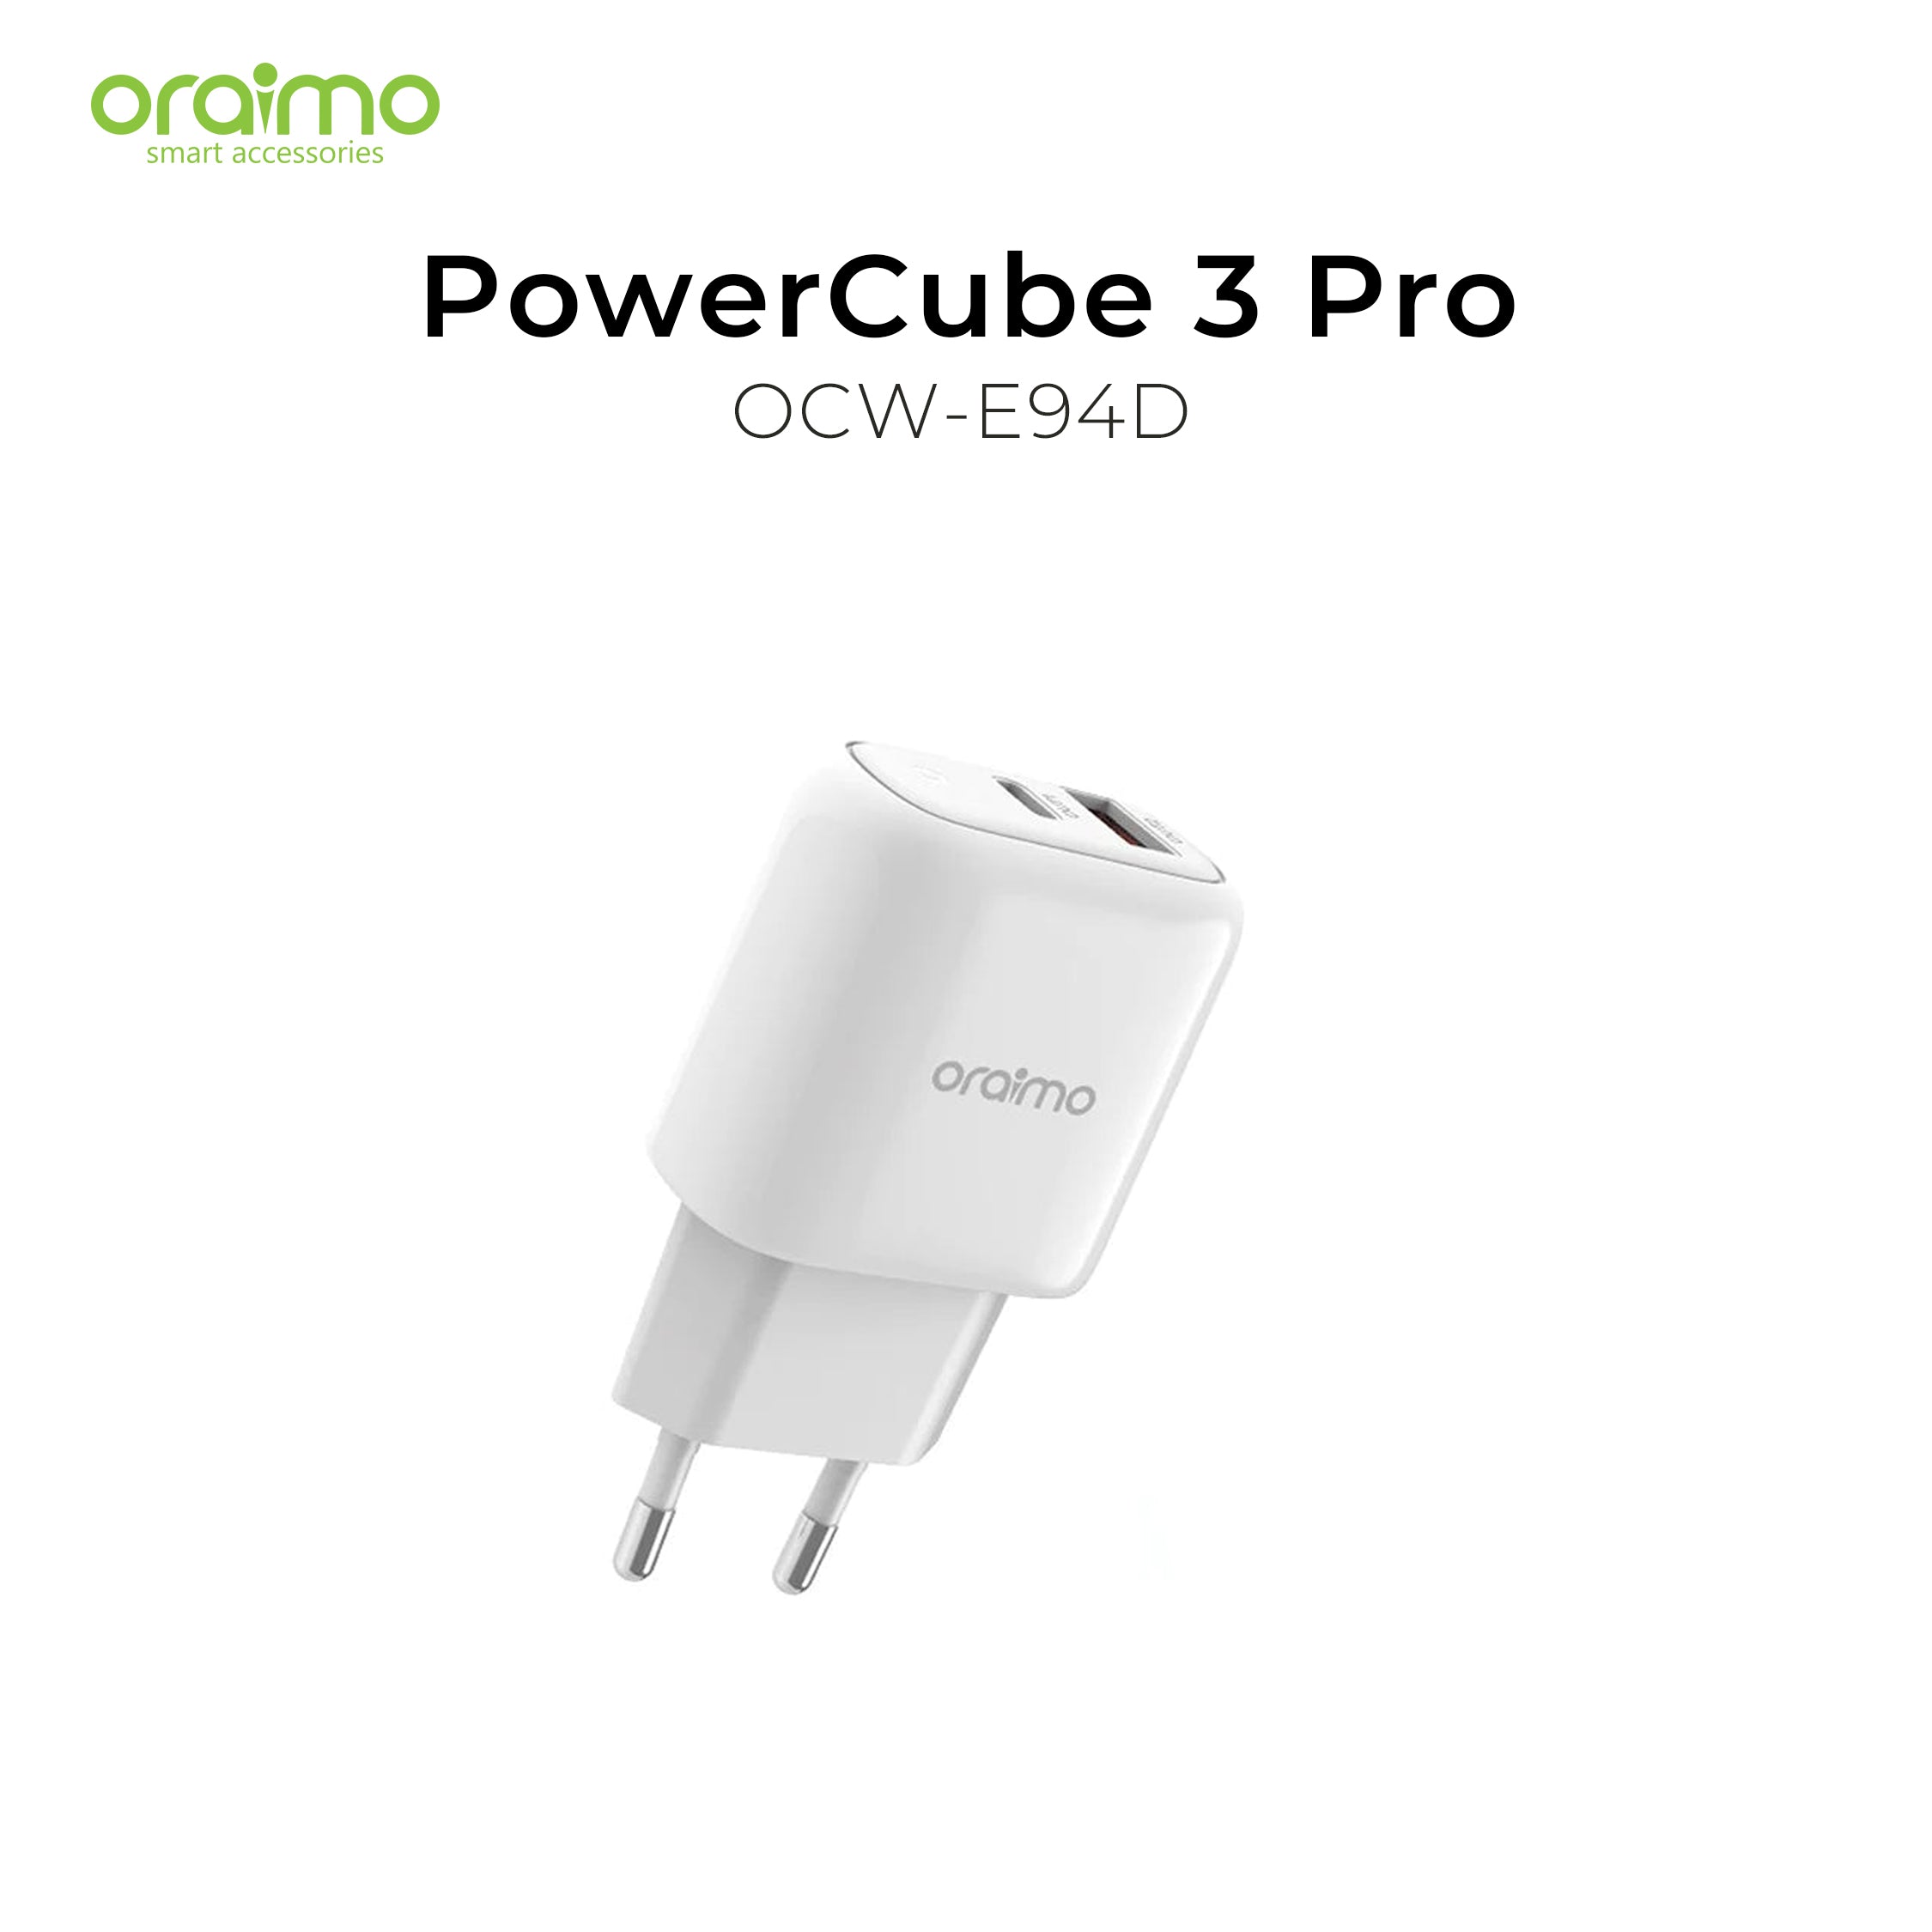 Oraimo PowerCube 3 Pro Charger OCW-E94D